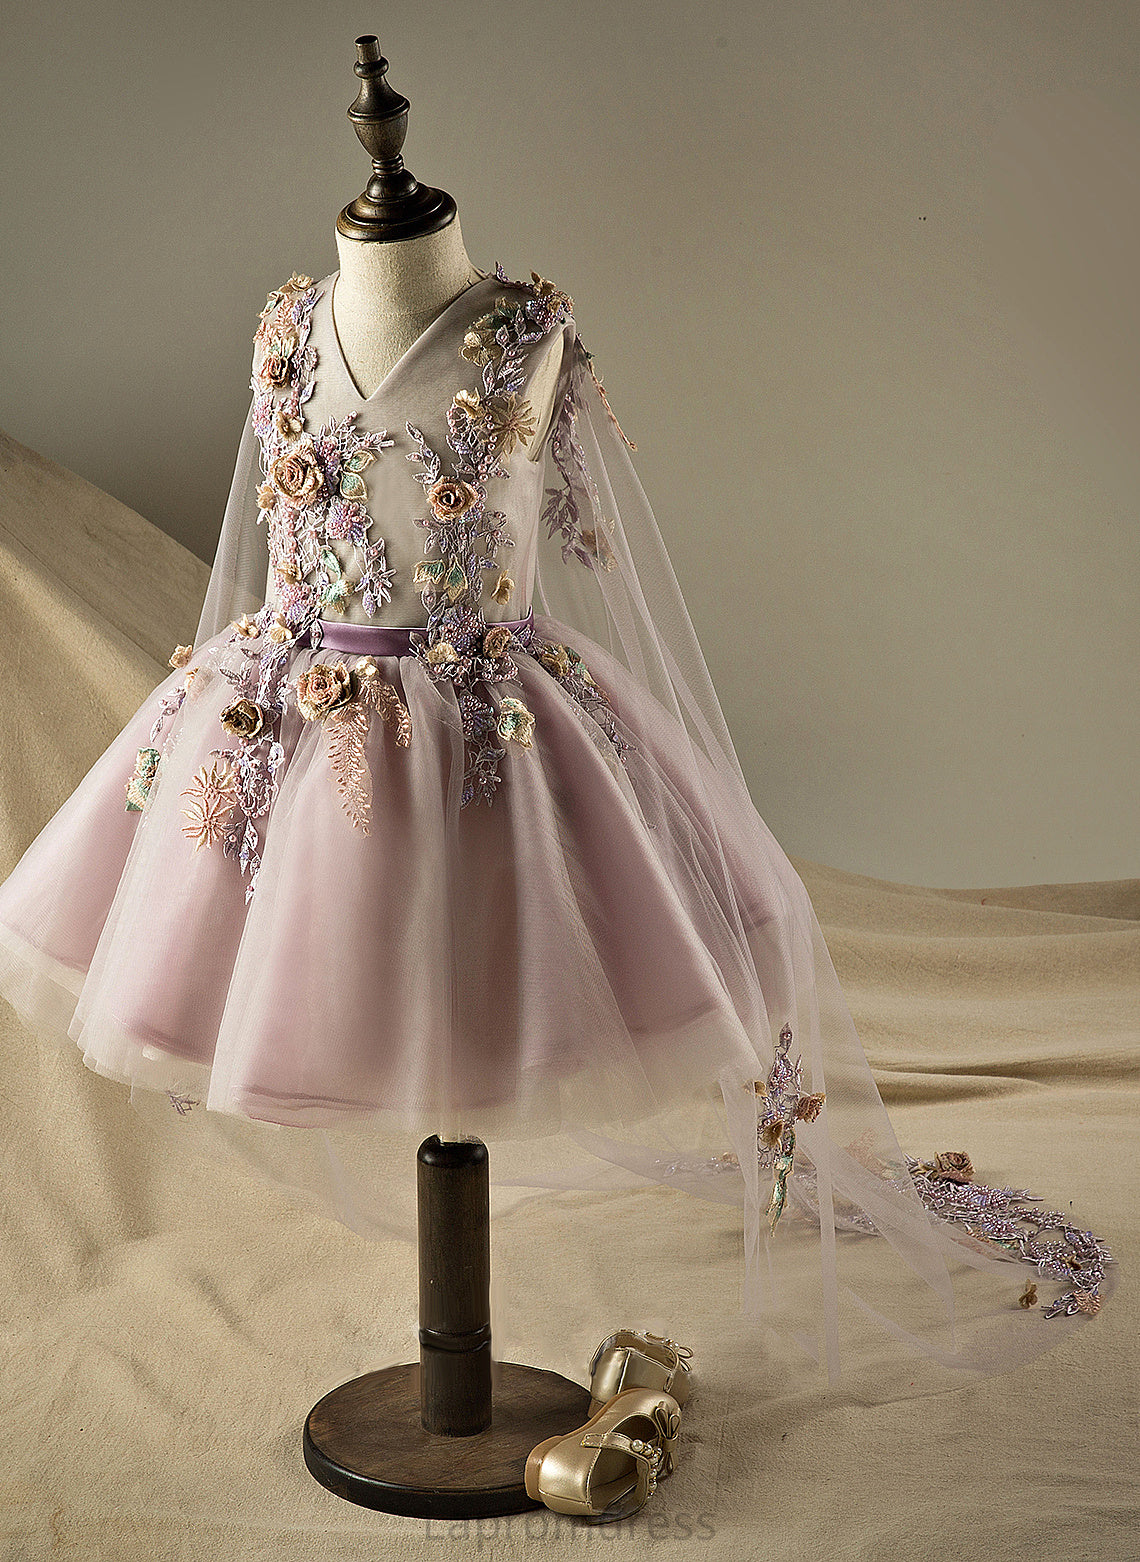 Dress Sleeveless - V-neck Girl A-Line Organza/Tulle Knee-length Flower Sahna Beading/Flower(s)/Sequins Flower Girl Dresses With